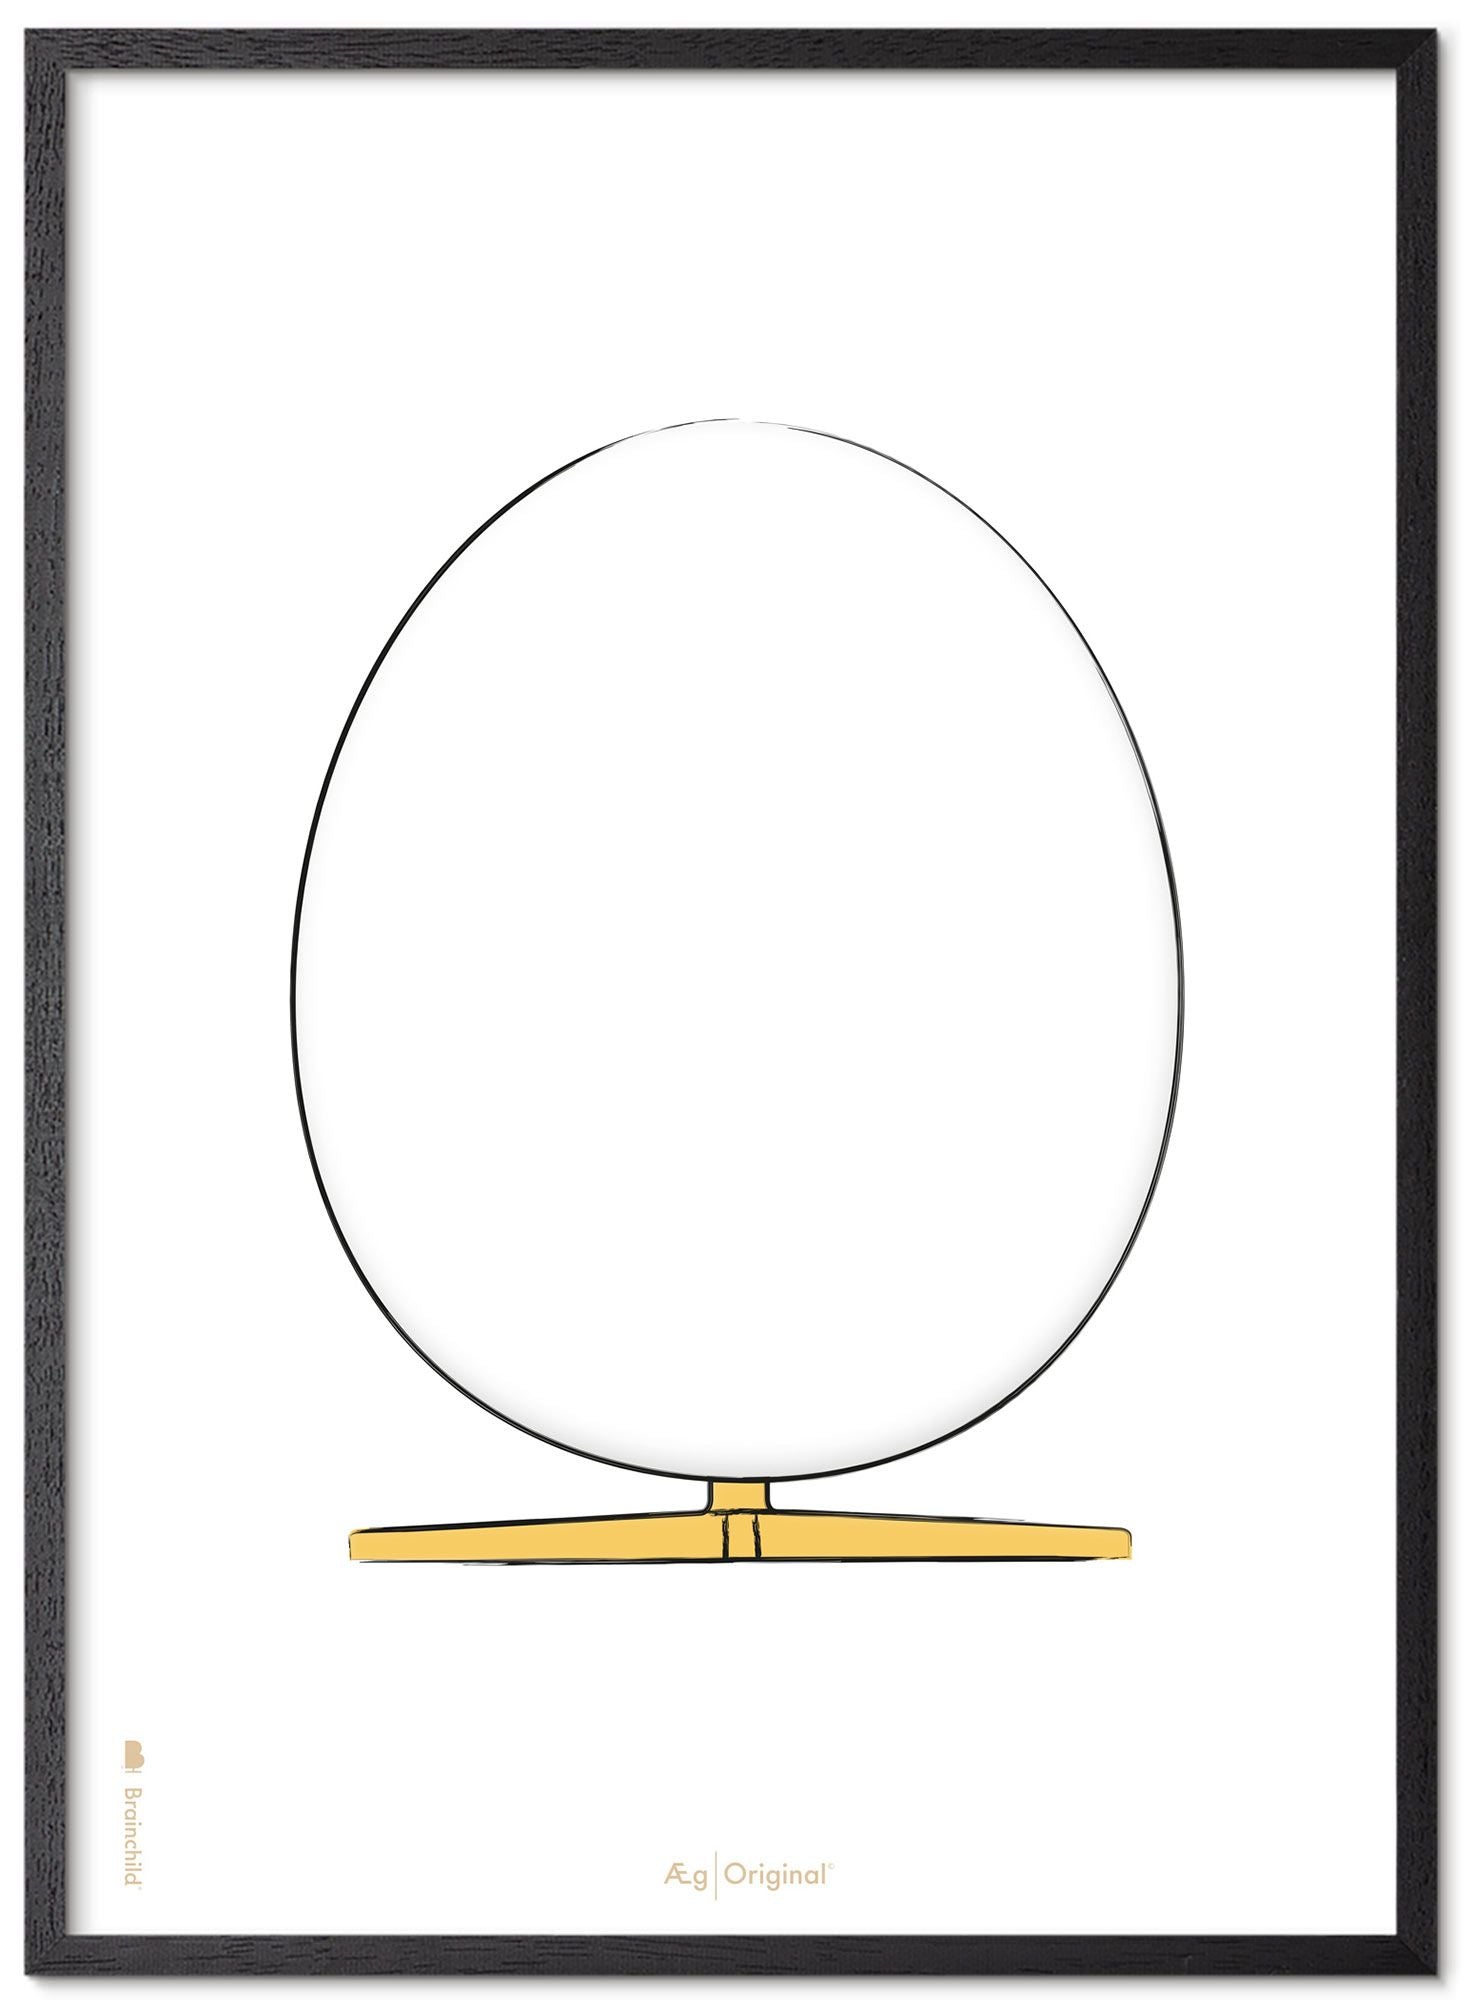 Prepare el póster de boceto de diseño de huevo con marco hecho de madera lacada negra A5, fondo blanco